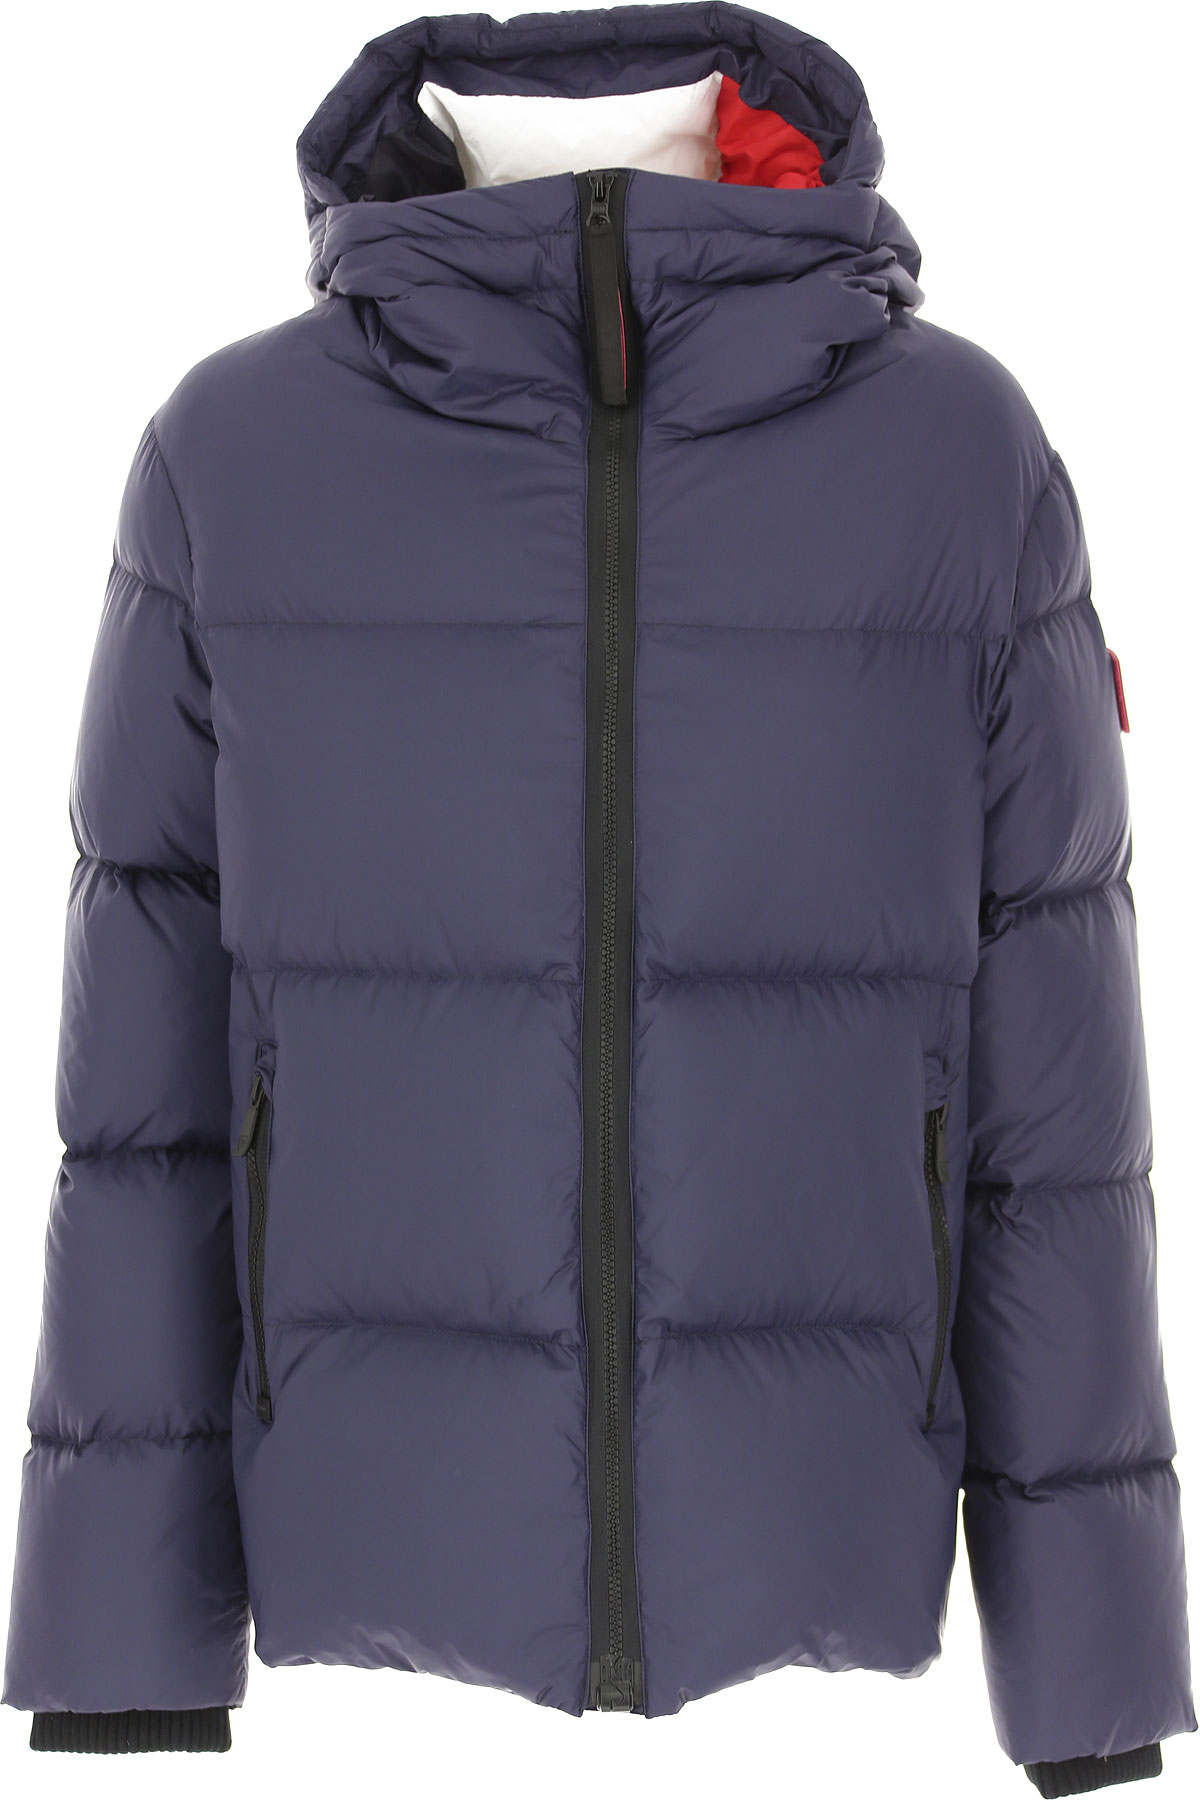 Rossignol Daunenjacke für Damen, wattierte Ski Jacke Günstig im Sale, Tintenblau, Polyamid, 2017, 40 44 M